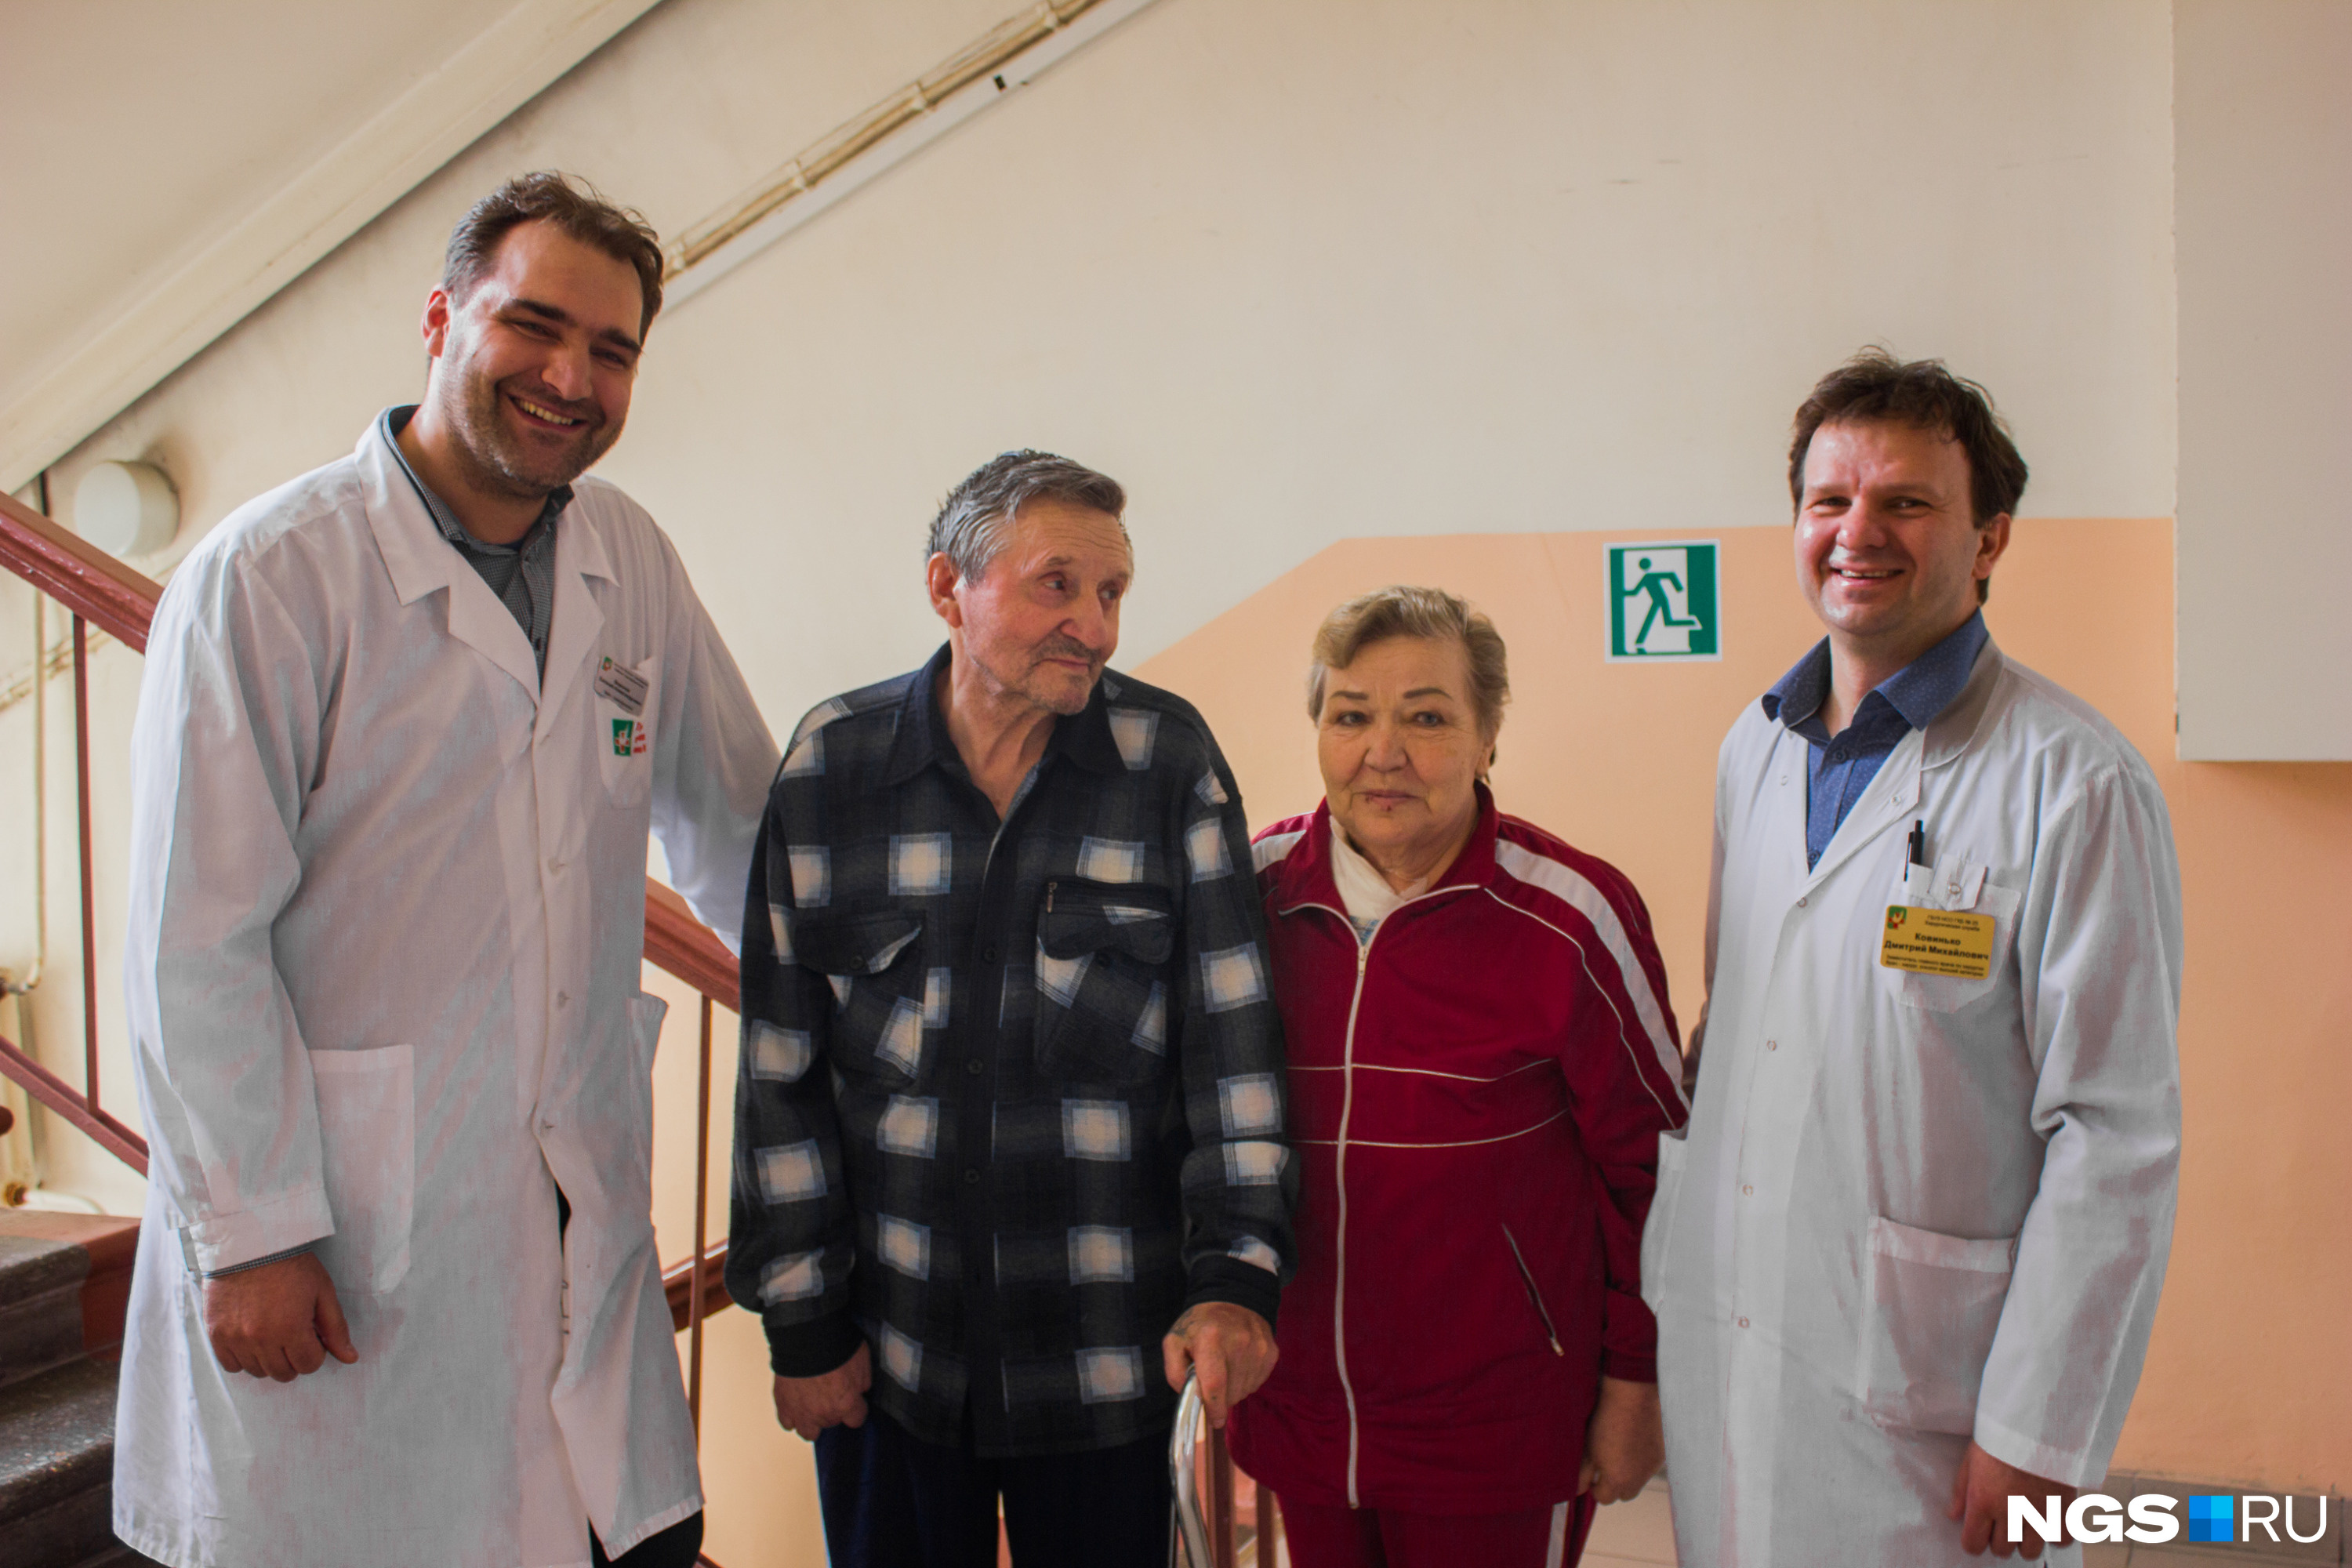 Нина Рогова несколько раз подчеркнула в беседе с НГС, что очень благодарна врачам. Ту роковую фигурку петуха после инцидента ещё не видела, но хочет избавиться от статуэтки. На фото пациенты с трансфузиологом Евгением Вороновым (слева) и хирургом Дмитрием Ковинько